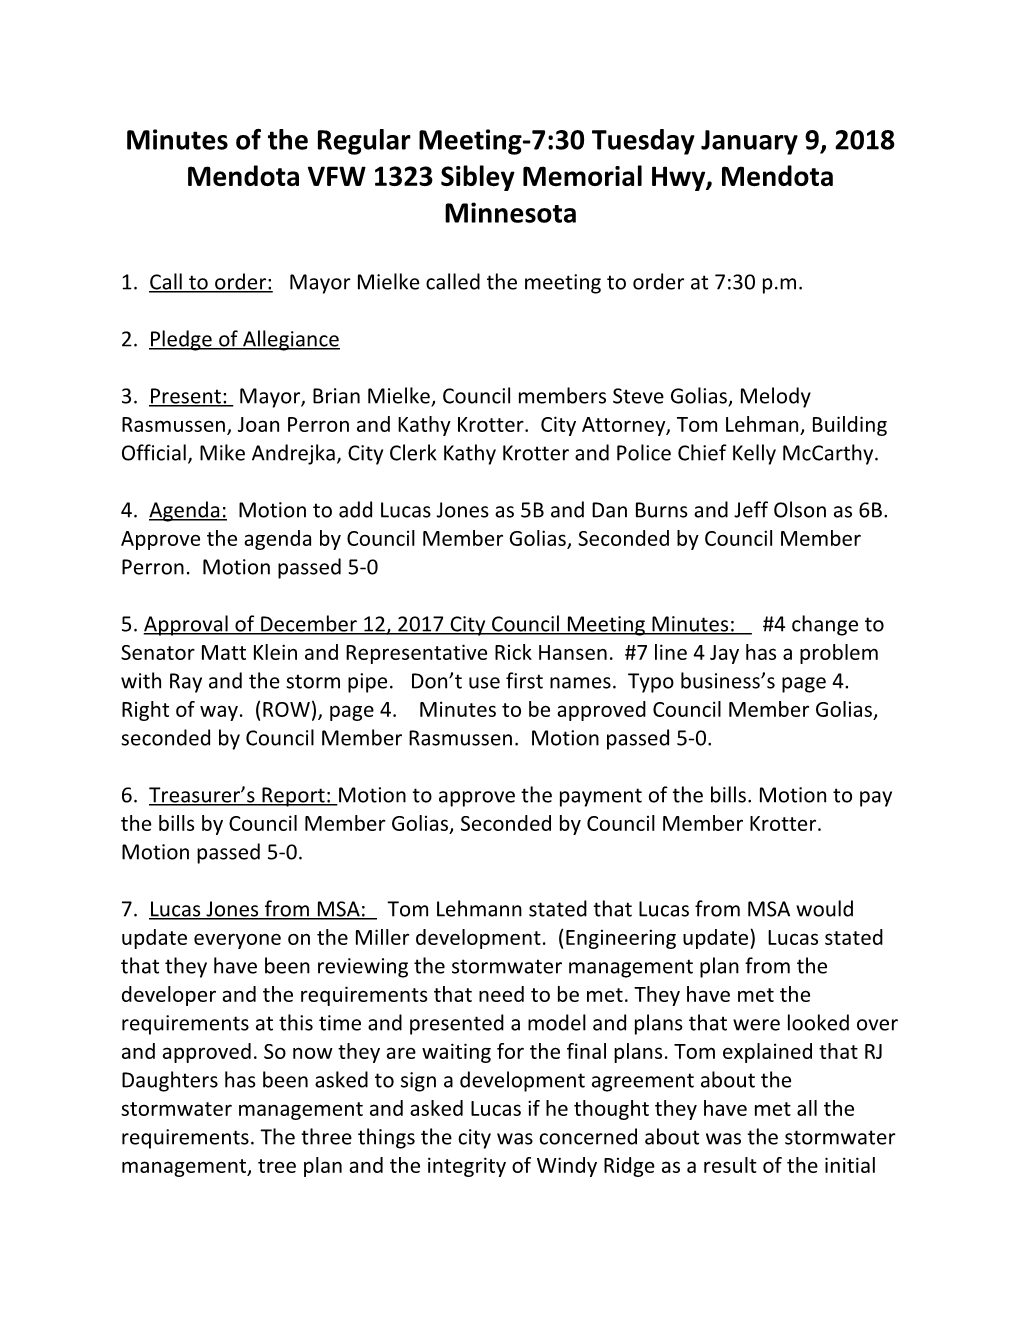 Mendota VFW 1323 Sibley Memorial Hwy, Mendota Minnesota